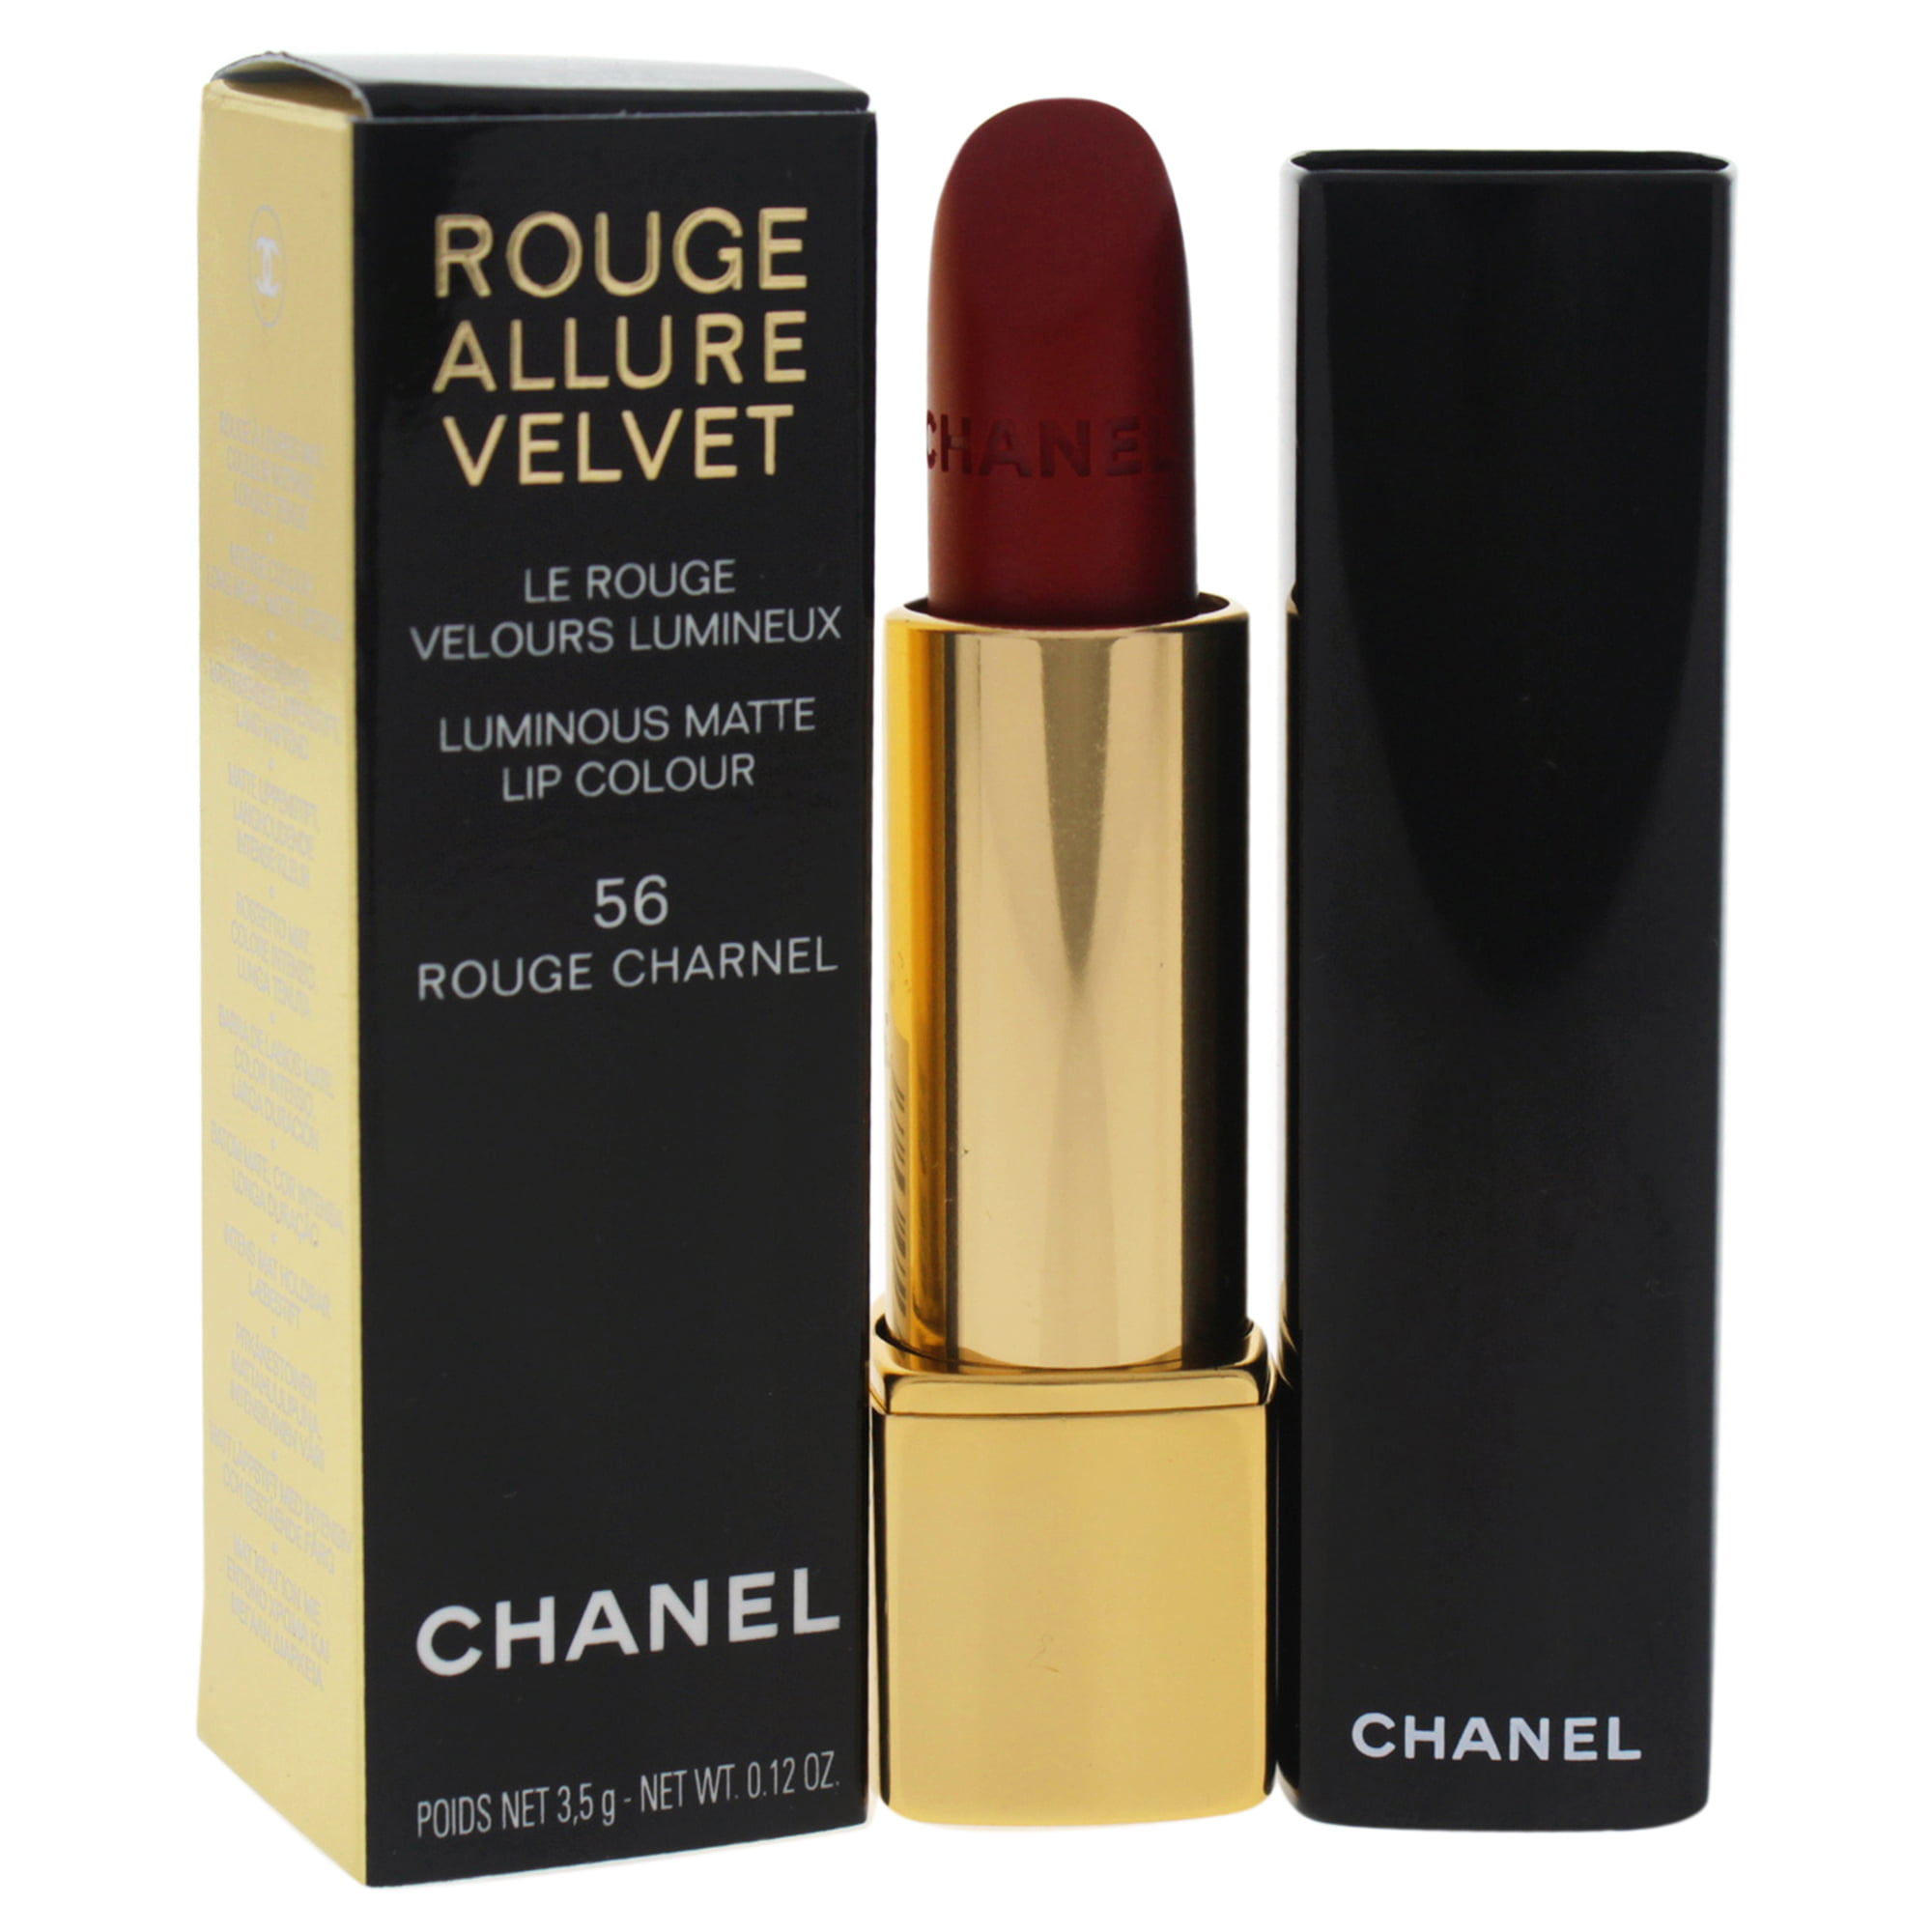 CHANEL ROUGE ALLURE VELVET Luminous Matte Lip Colour 56 CHARNELL NEW IN  BOX  eBay